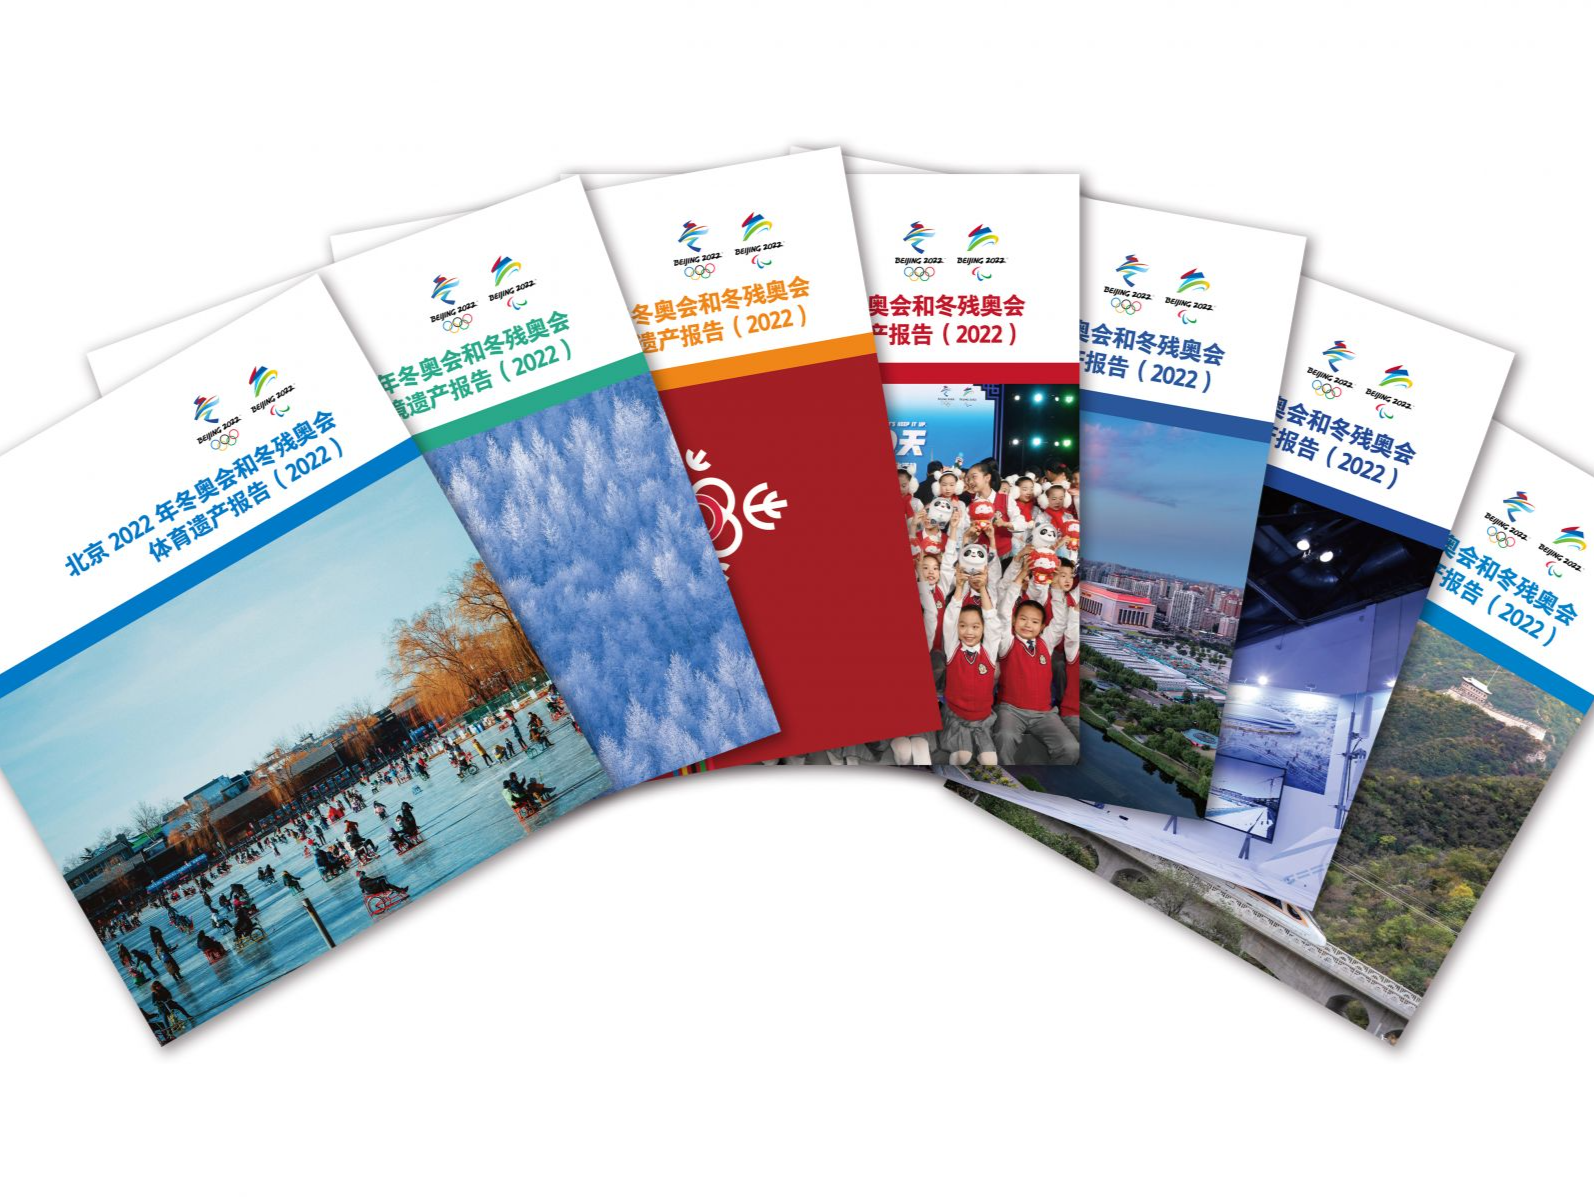 7大主题！《北京2022年冬奥会和冬残奥会遗产报告集》发布